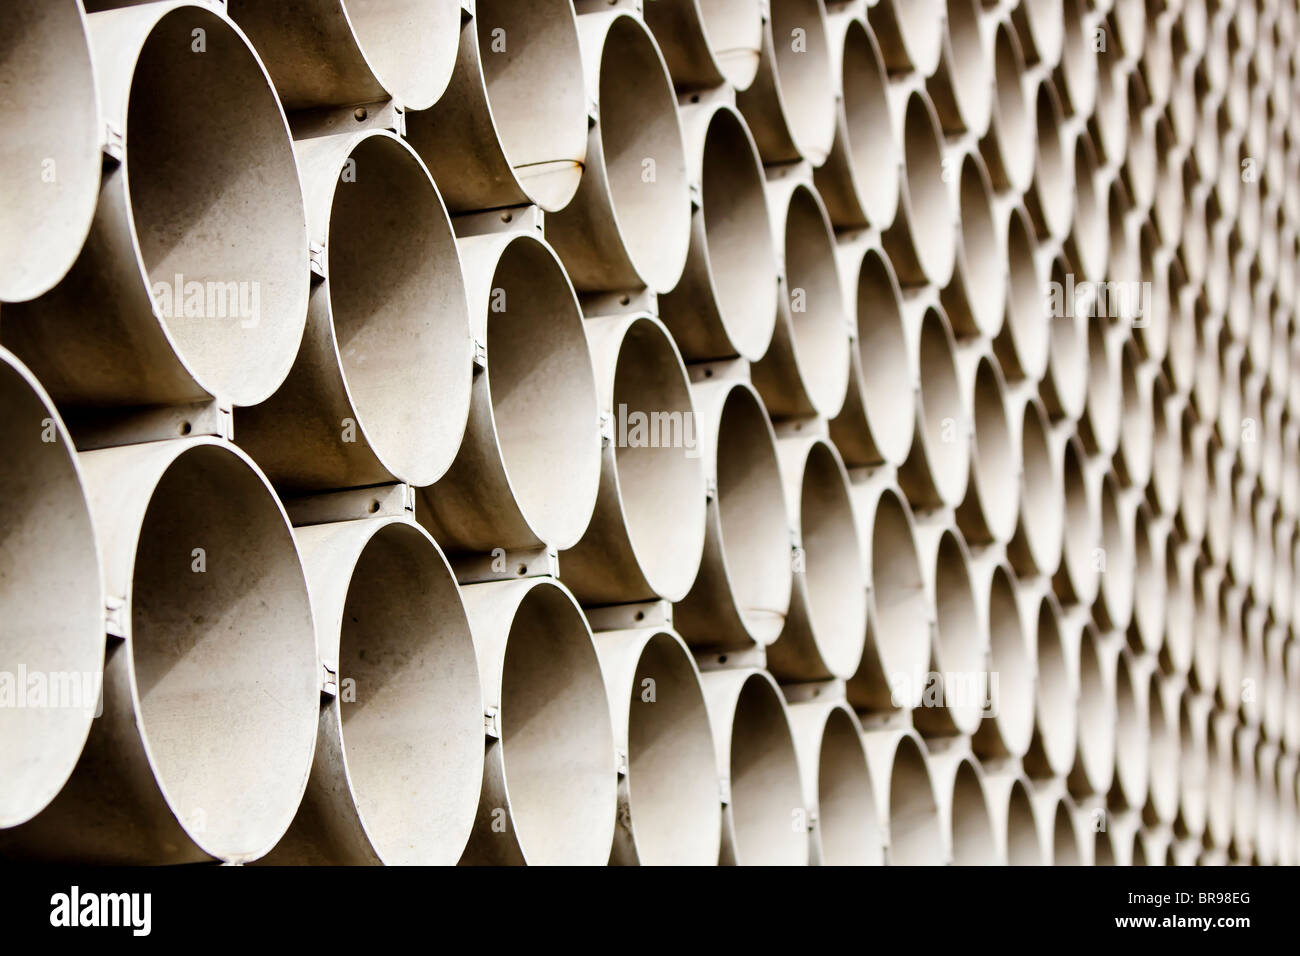 A wall of repeating circular shapes. Stock Photo